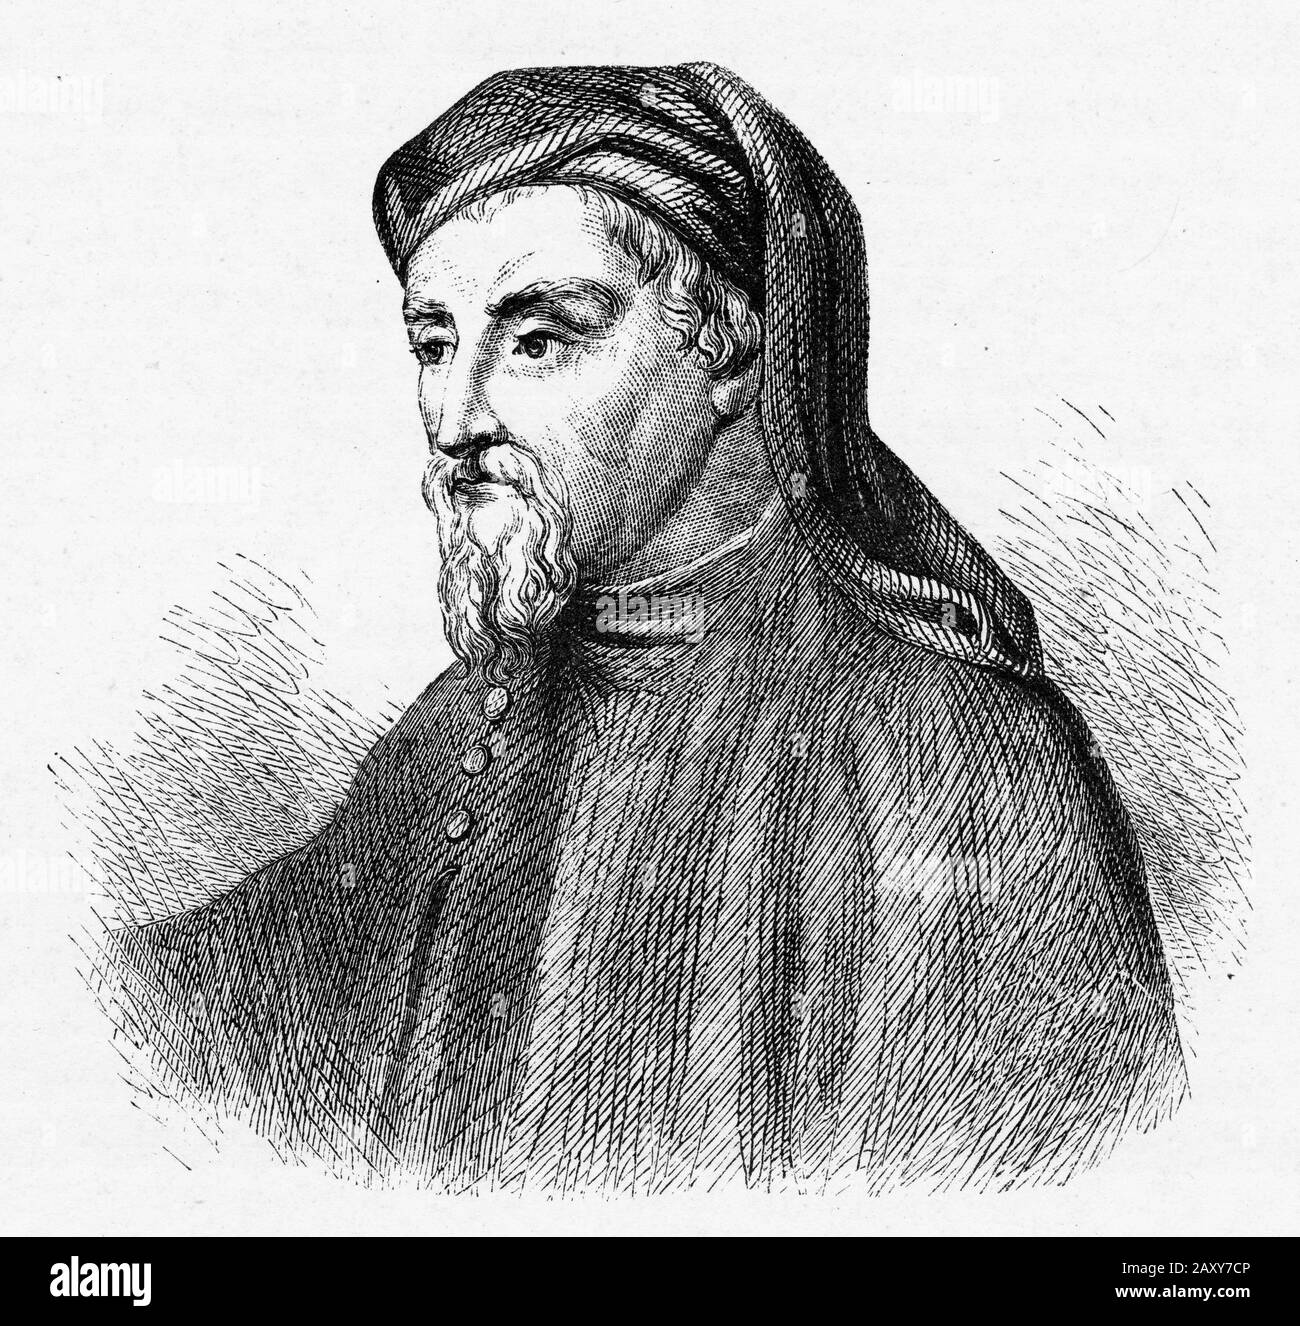 Graviertes Porträt von Geoffrey Chaucer (1340er - 1400) englischer Dichter und Autor. Weithin als der größte englische Dichter des Mittelalter angesehen, ist er am bekanntesten für Die Canterbury Tales. Chaucer wurde zum "Vater der englischen Literatur" stilisiert. Stockfoto